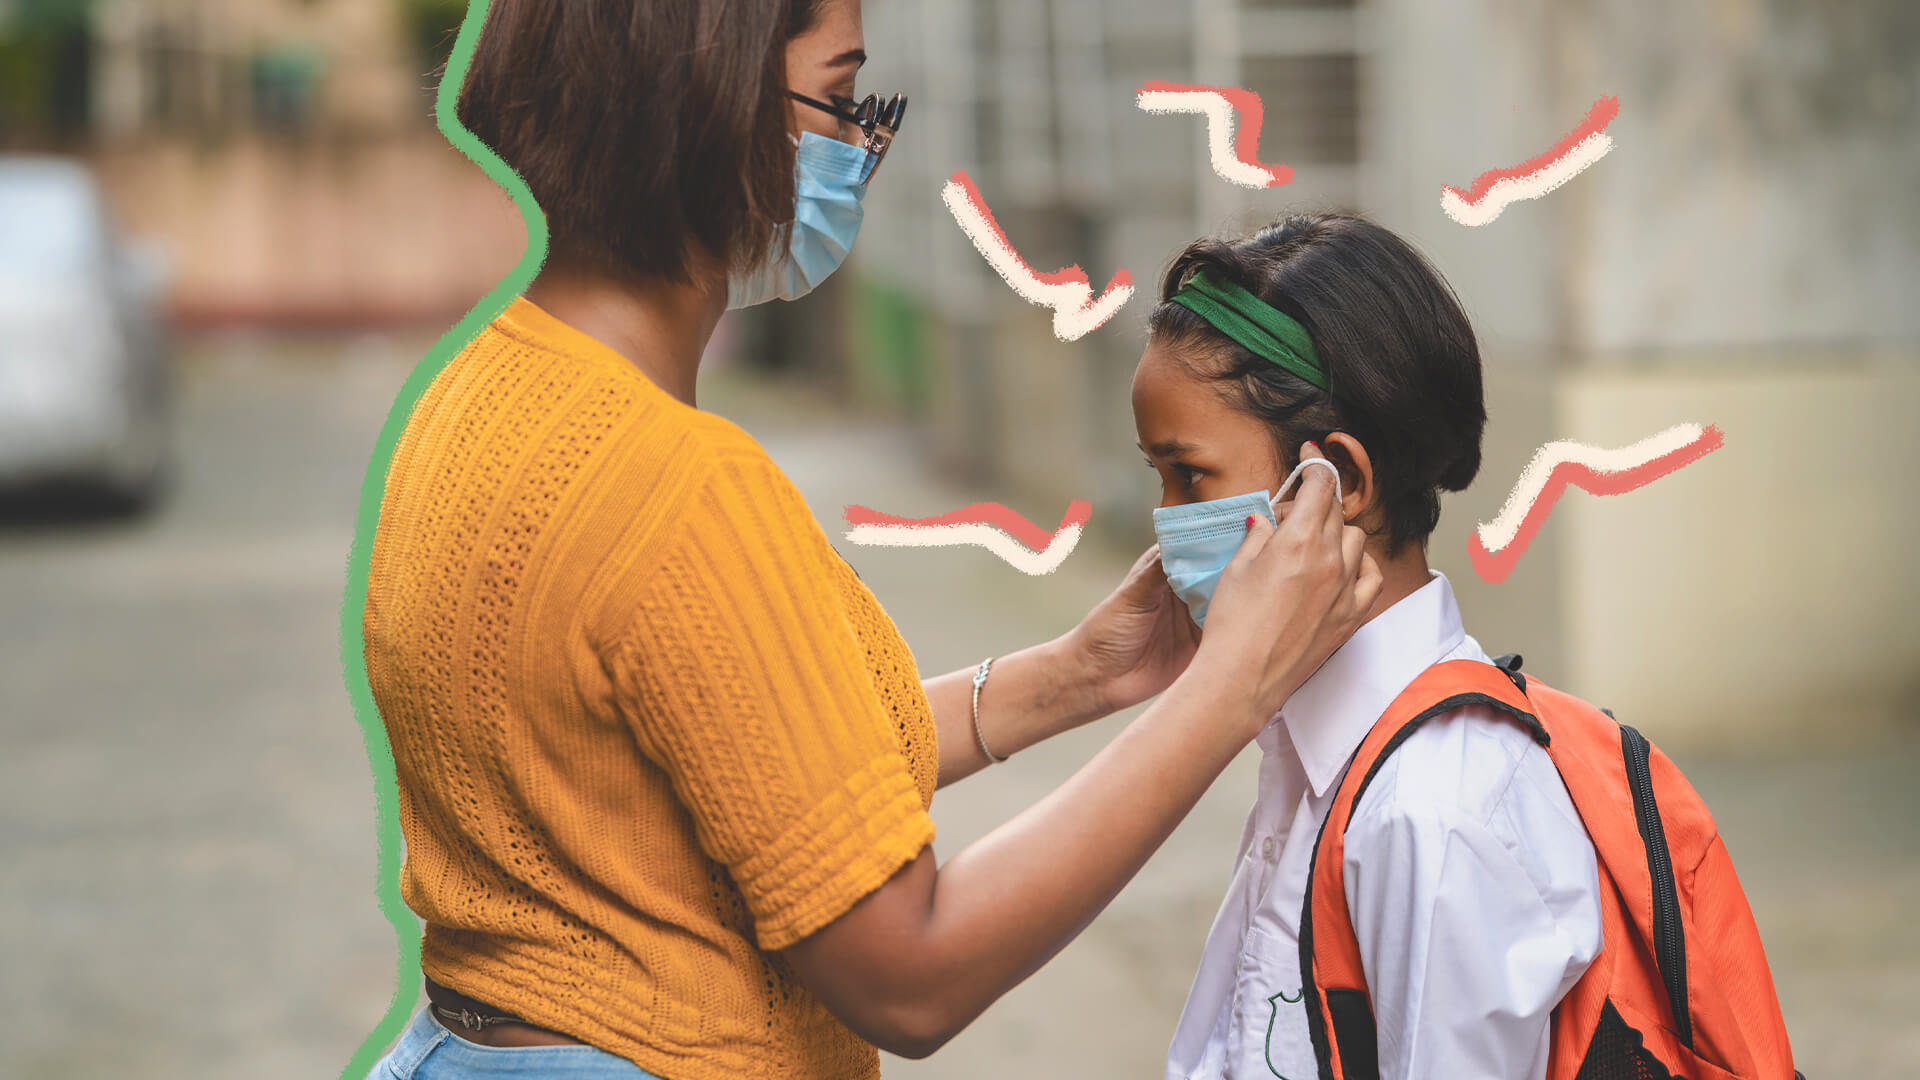 Vacinação como aliada do retorno às aulas presenciais: na foto, uma menina tem a máscara ajeitada por sua mãe, ambas de pele clara. A menina carrega uma mochila nas costas. A imagem possui intervenções de rabiscos coloridos.